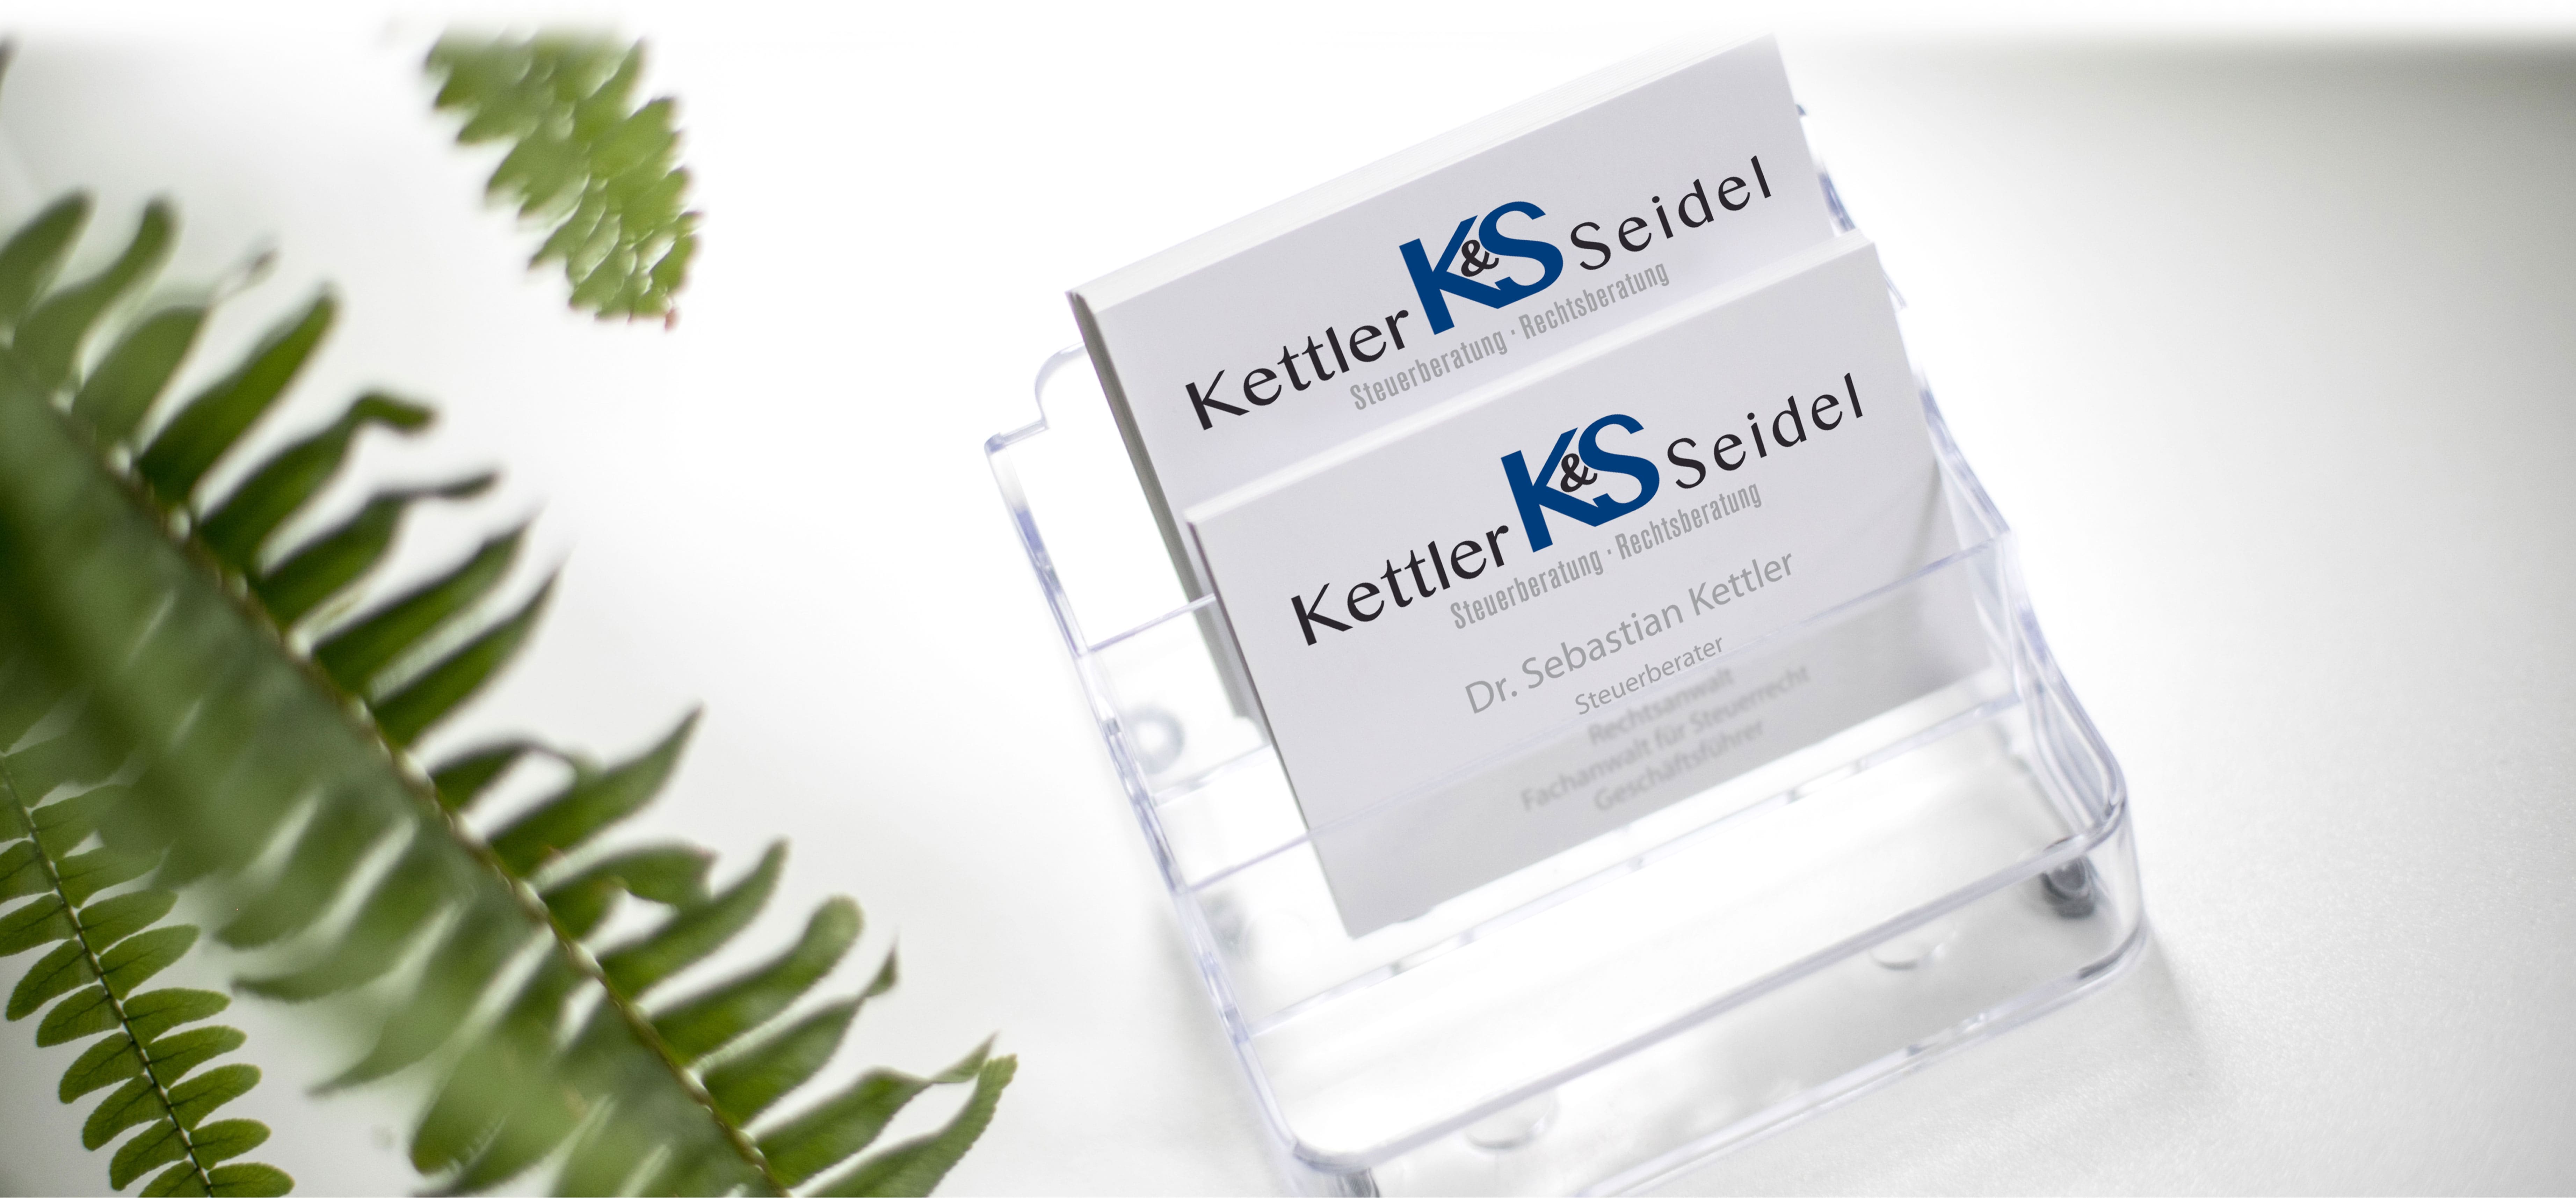 Kettler & Seidel PartG mbB Steuerberater Rechtsanwalt